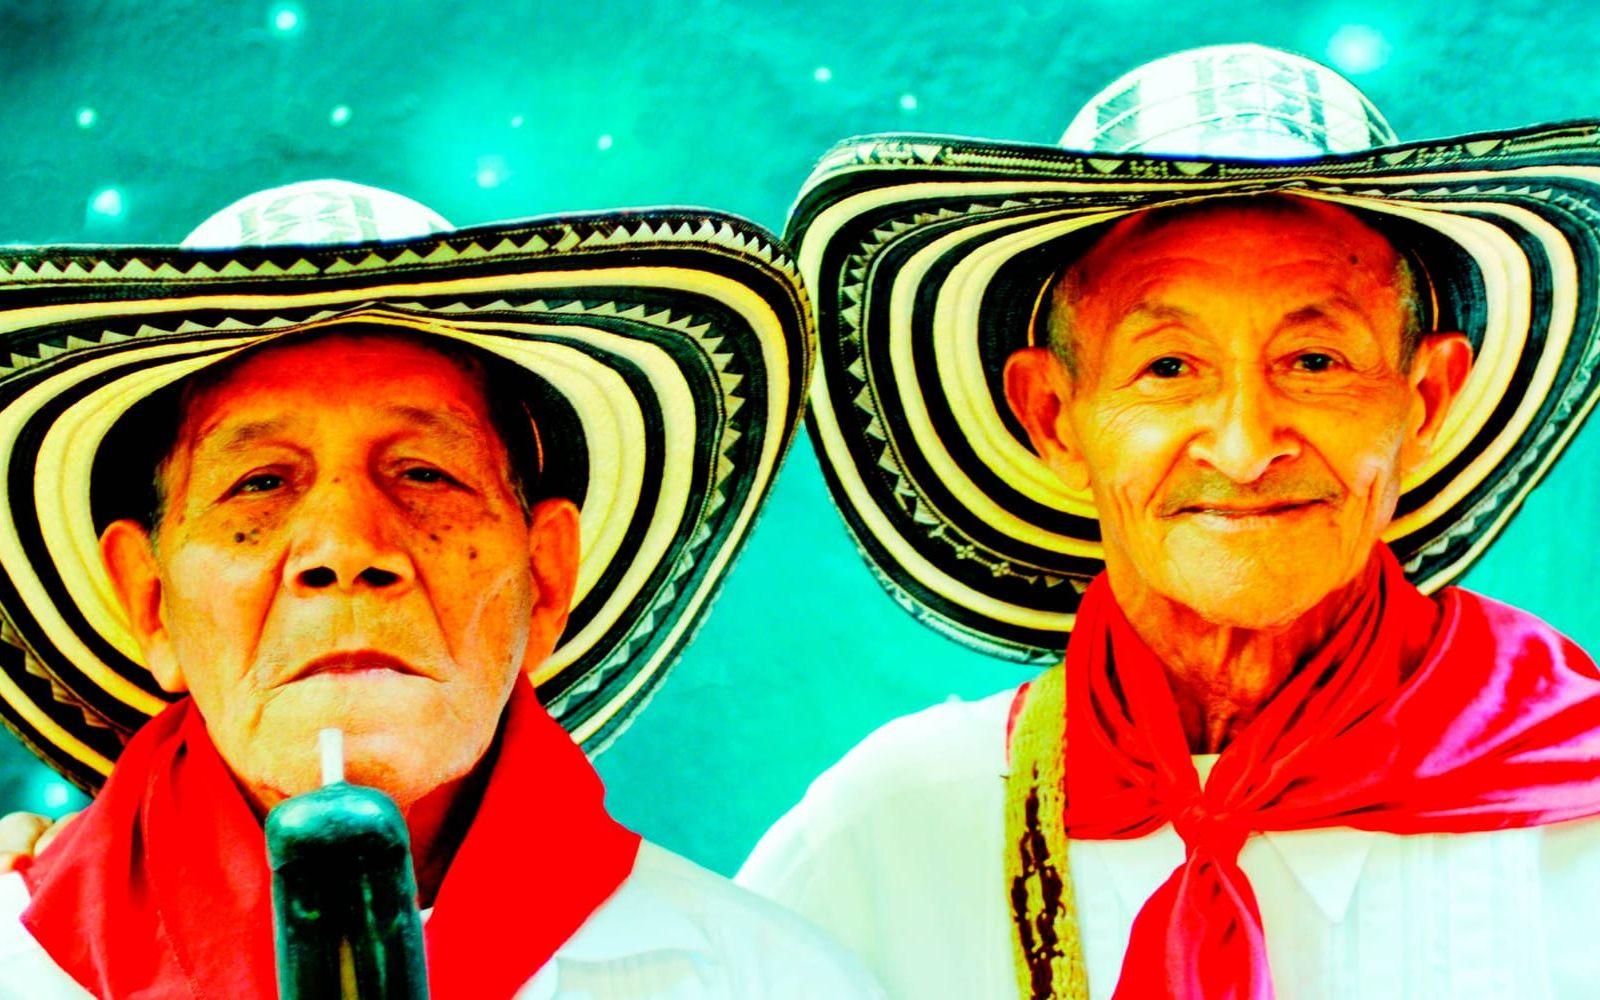 Los Gaiteros de San Jacinto lade grunden för musikgenren cumbia i Colombia redan 1940.